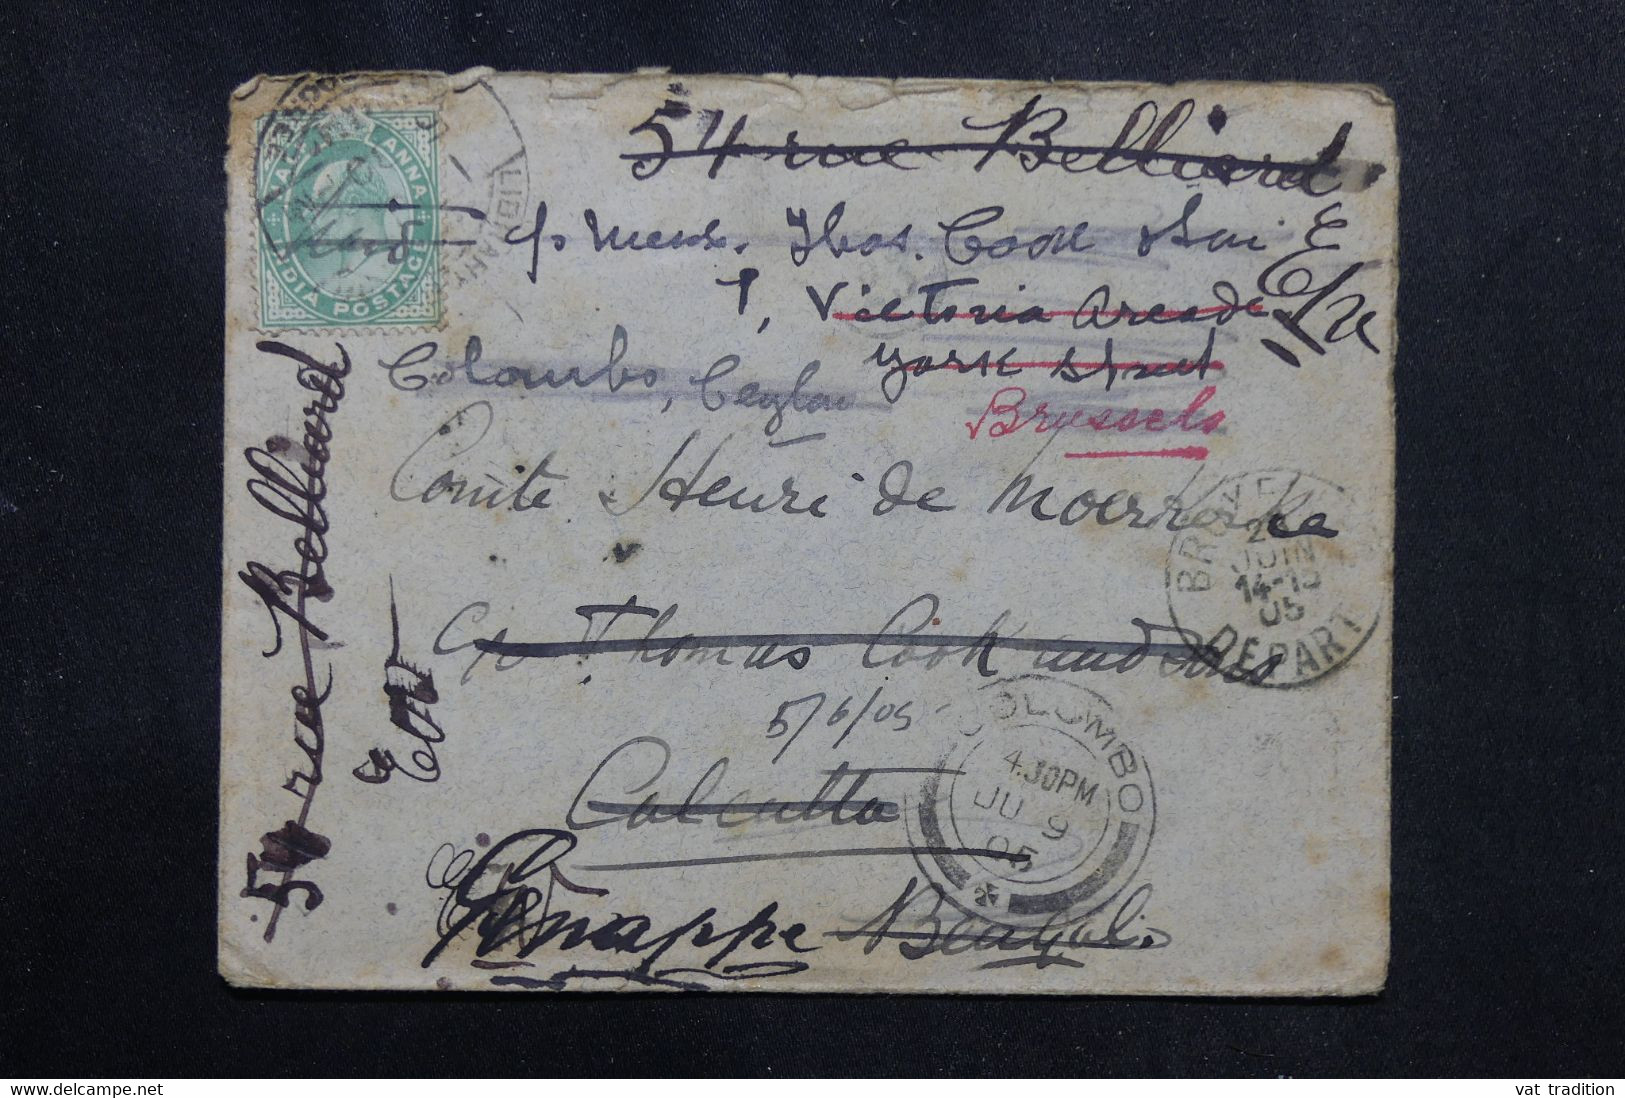 INDE - Enveloppe Pour Calcutta Et Redirigée Vers Bruxelles En 1905, Voir Cachets De Transit - L 72219 - 1902-11 King Edward VII